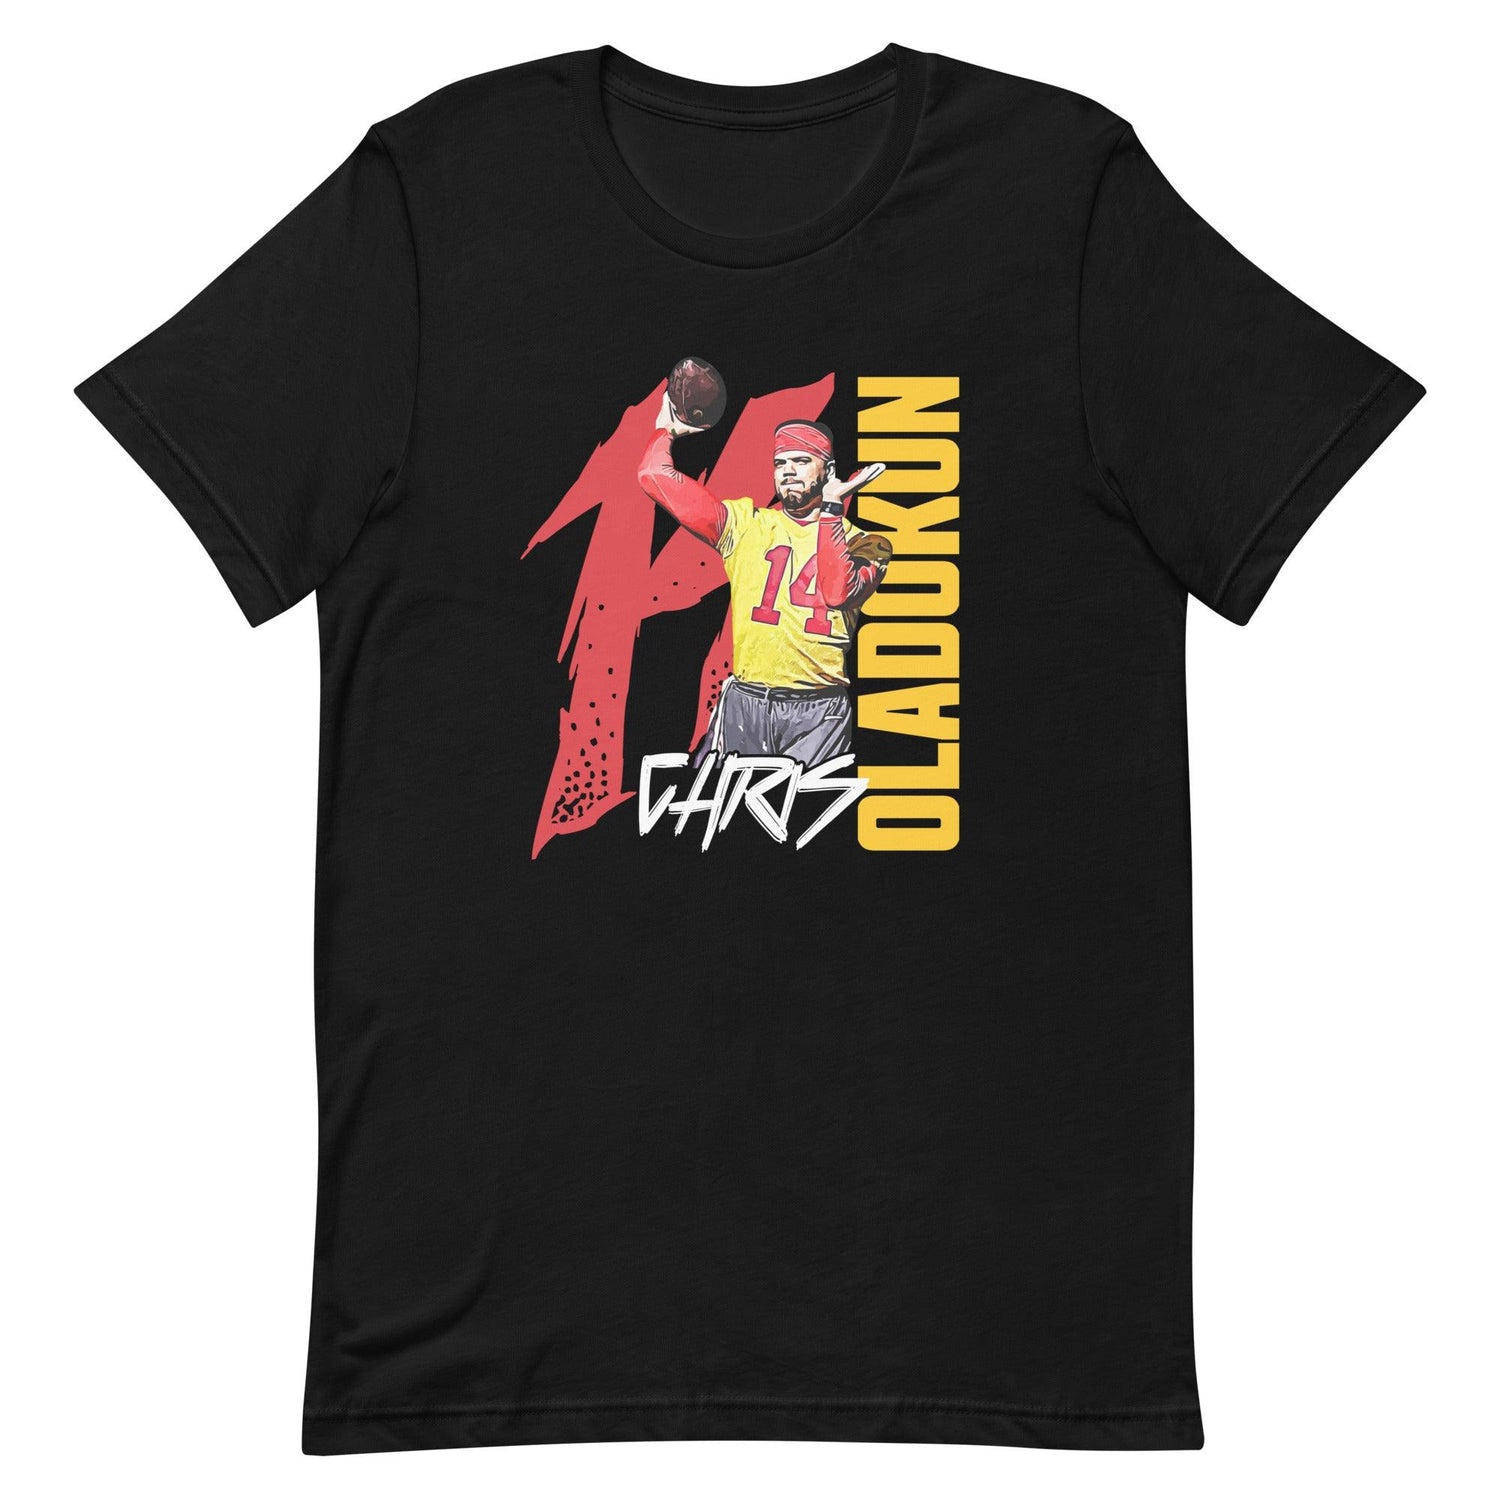 Chris Oladokun "Jersey" t-shirt - Fan Arch